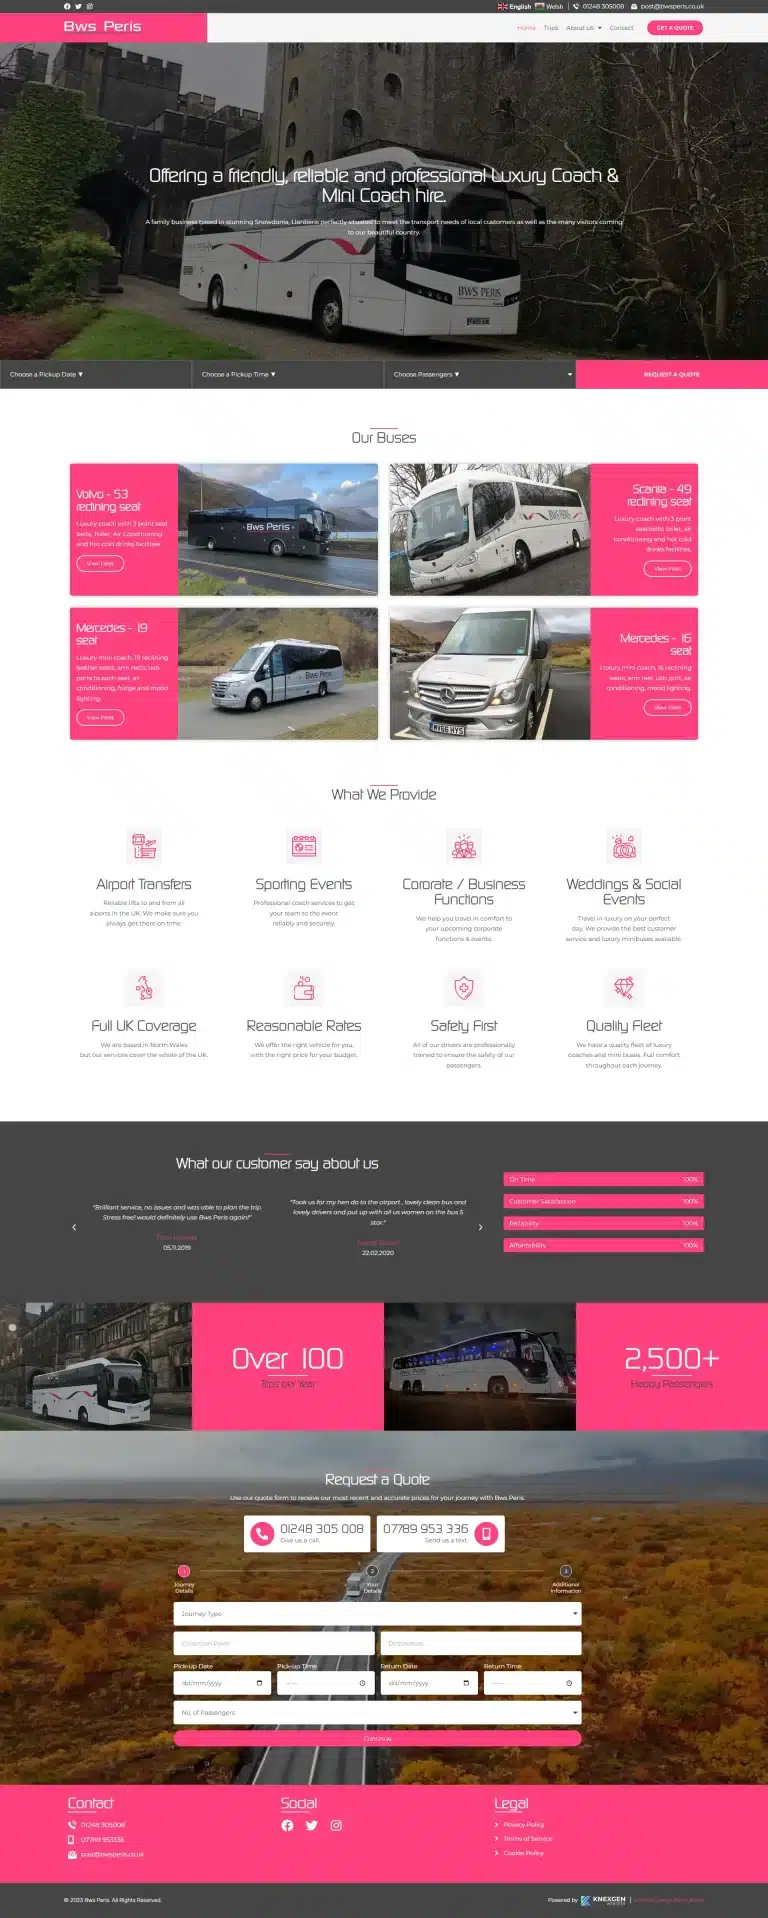 bespoke web design uk website design for uk agencies and businesses